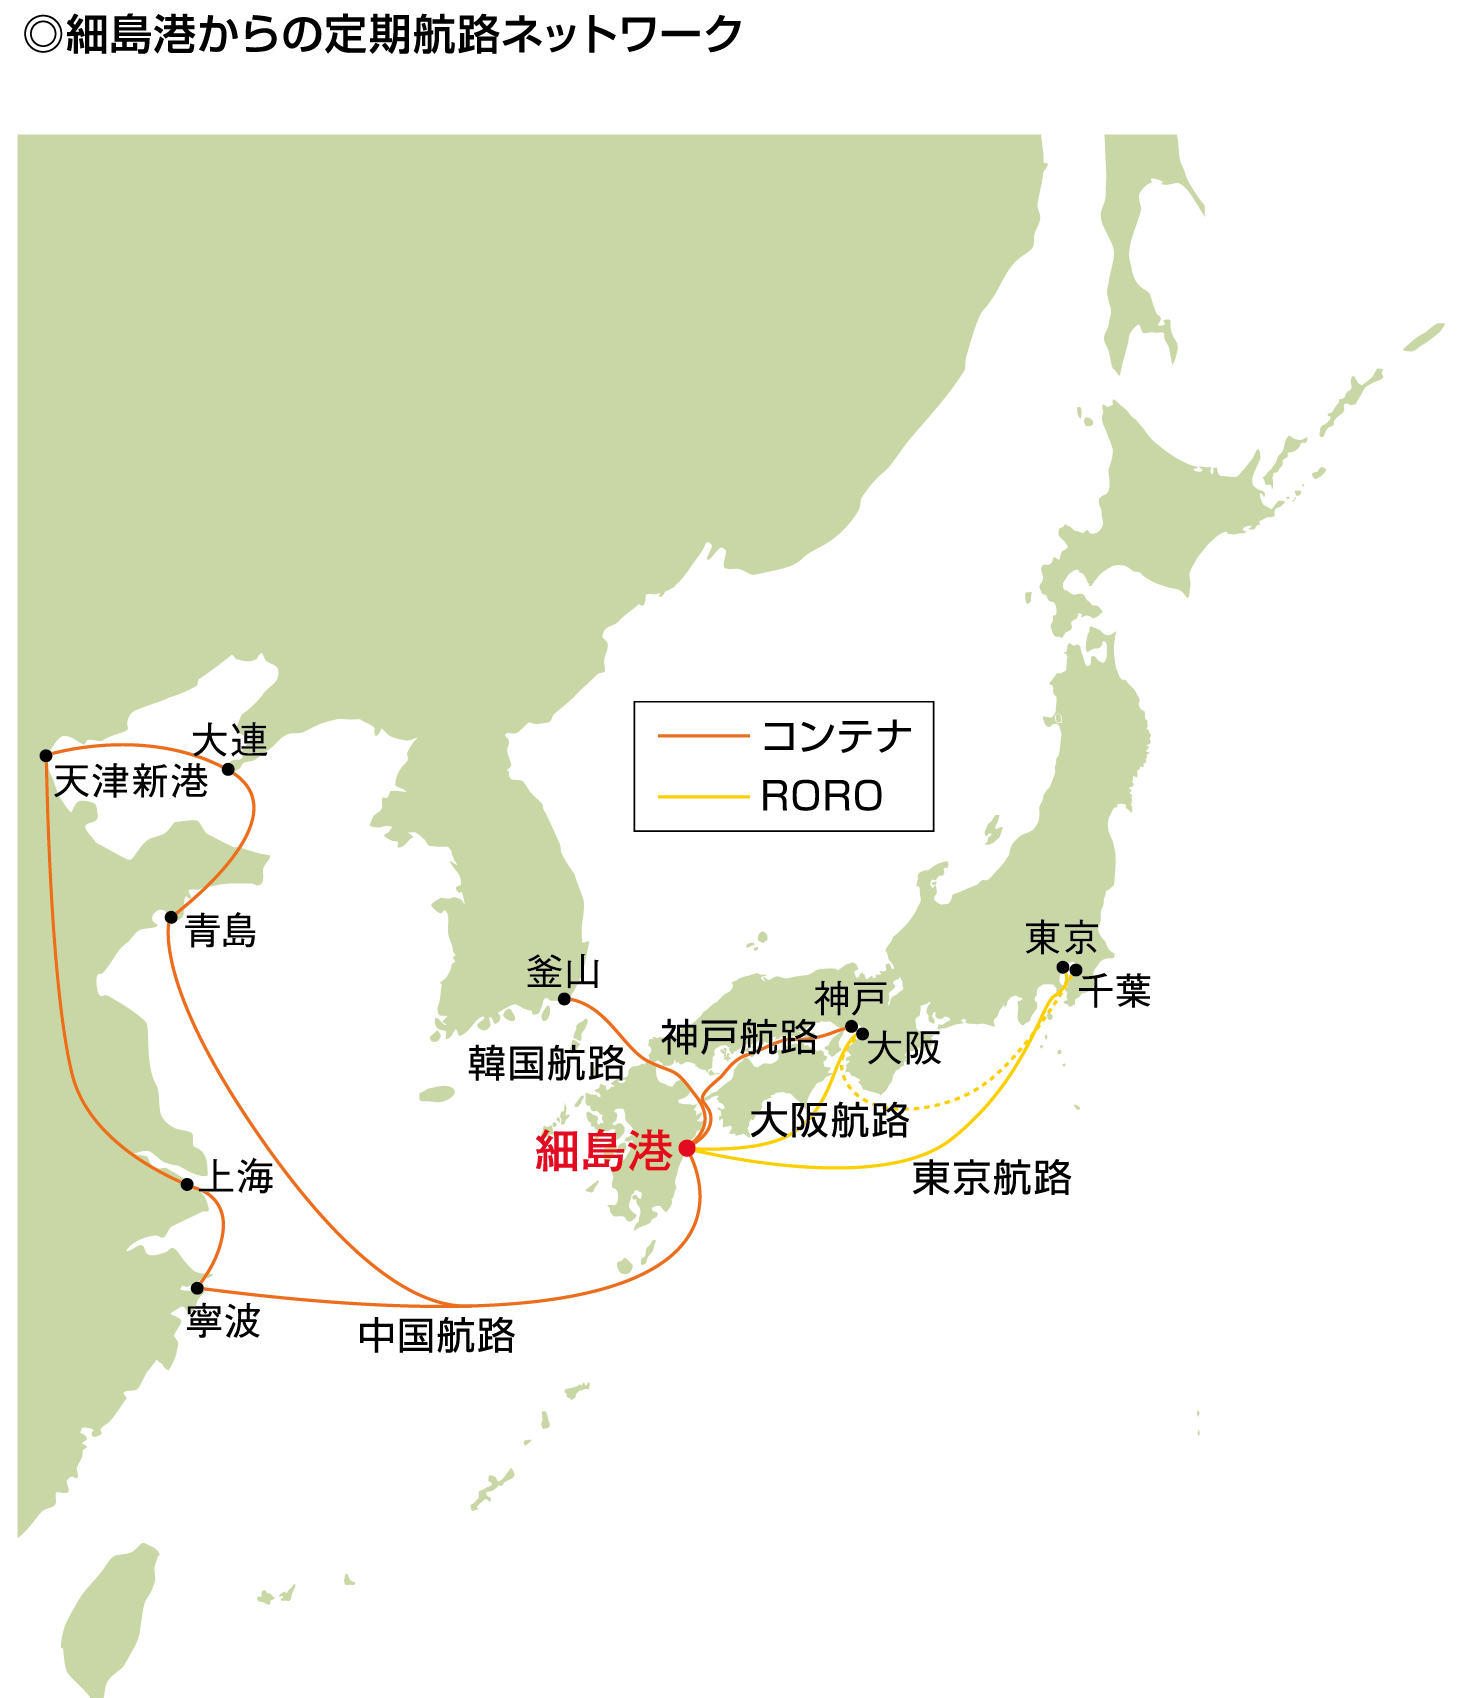 細島港からの定期航路ネットワーク